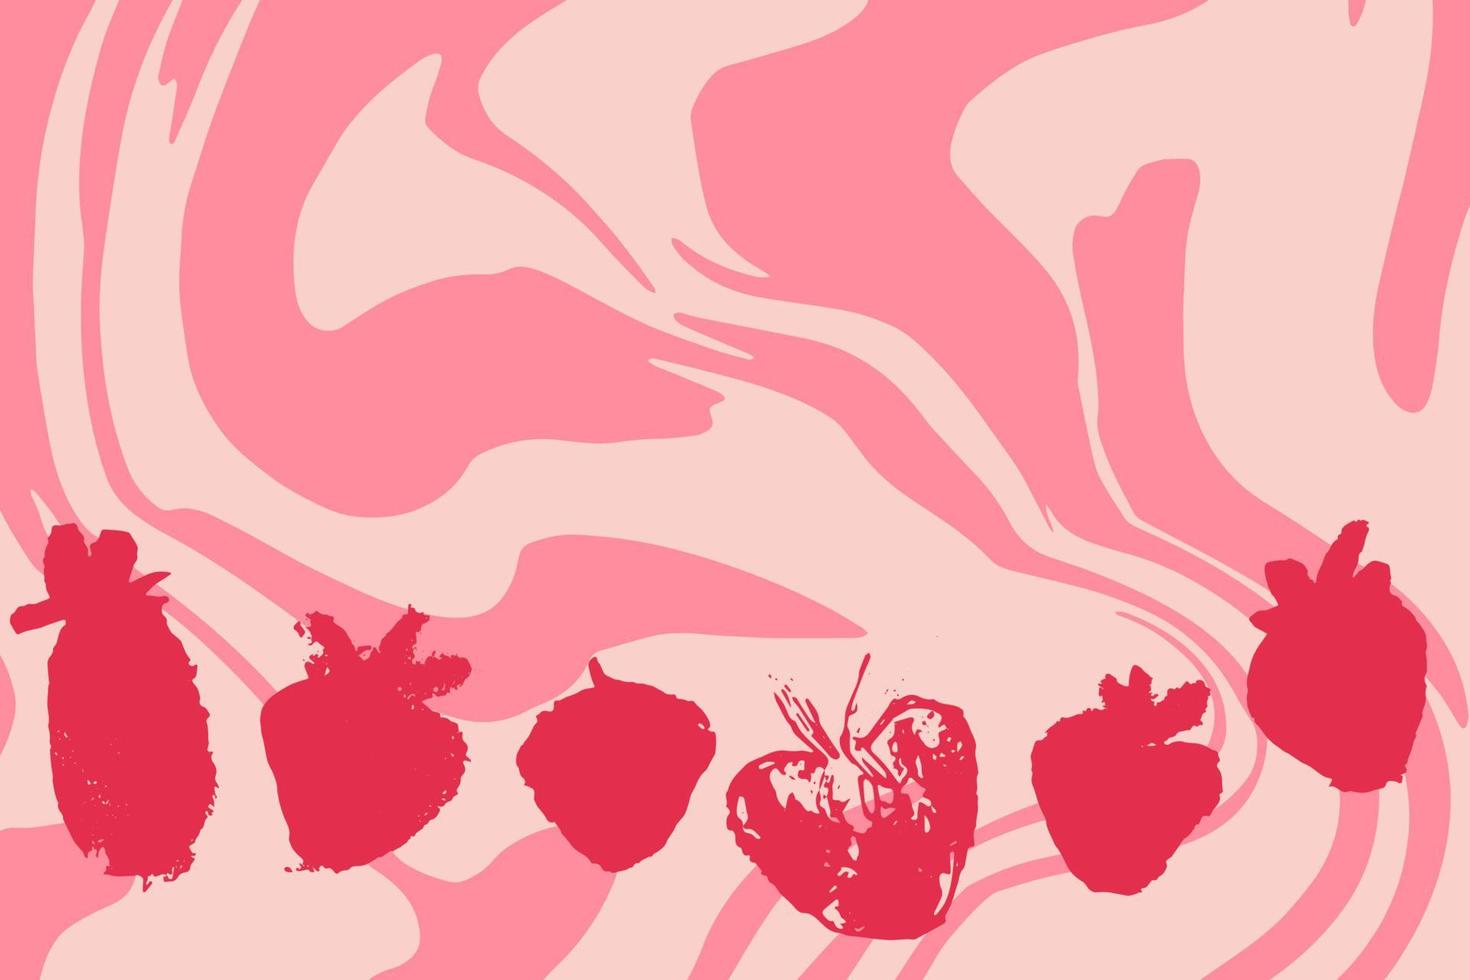 kort med uppsättning handritade abstrakta jordgubbar på rosa bakgrund, virvel av fruktmjölk. vektor